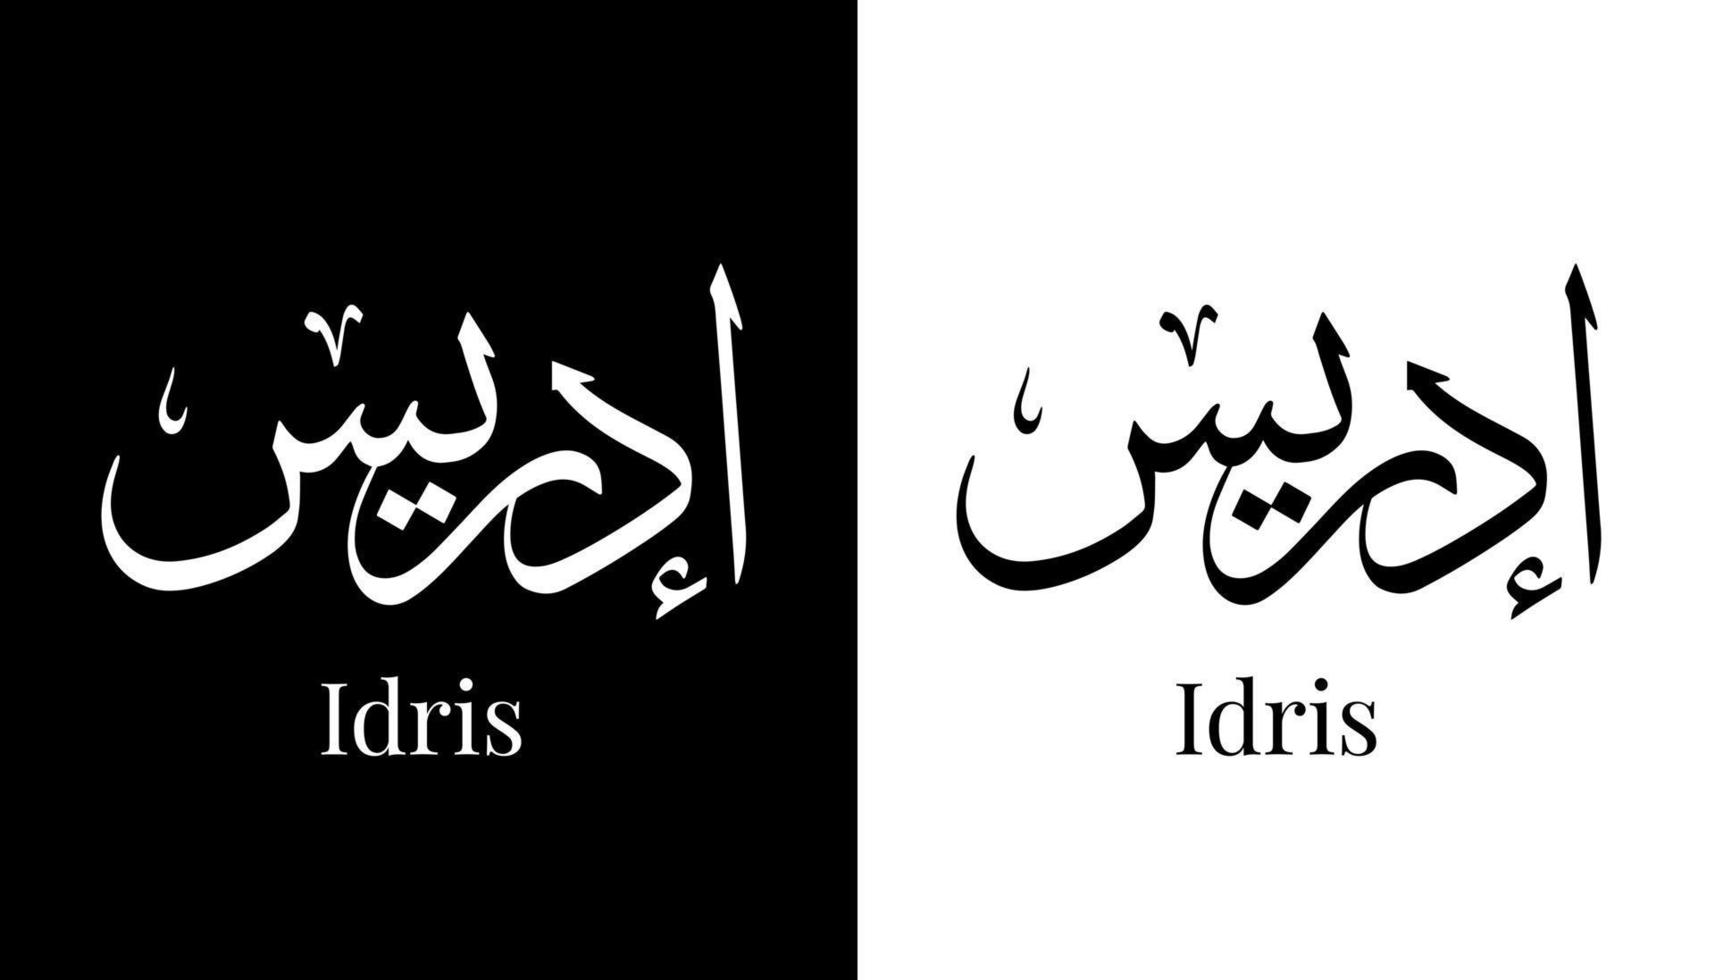 arabisk kalligrafi namn översatt "idris" arabiska bokstäver alfabetet teckensnitt bokstäver islamisk logotyp vektorillustration vektor